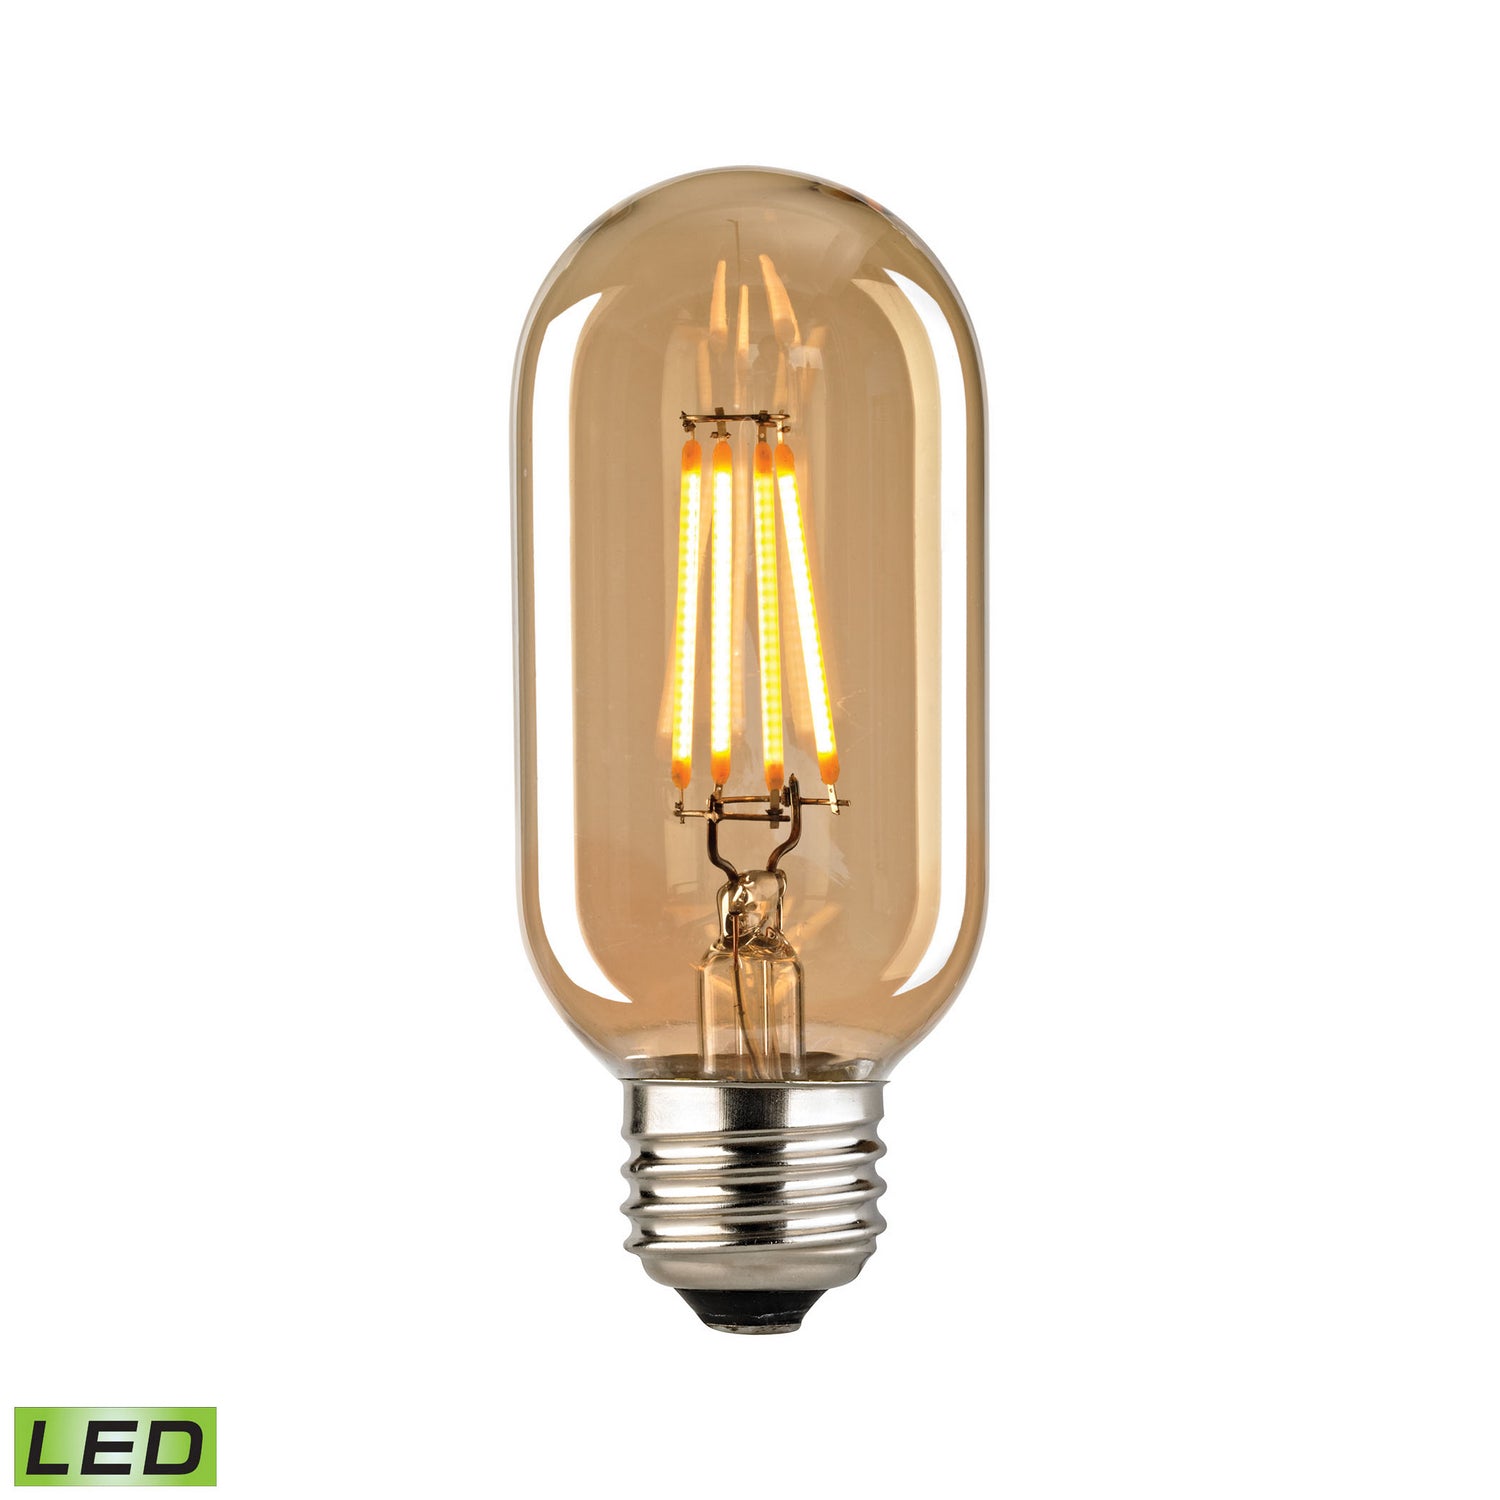 ELK Home - 1111 - Light Bulb - LED Bulbs - Light Gold Tint